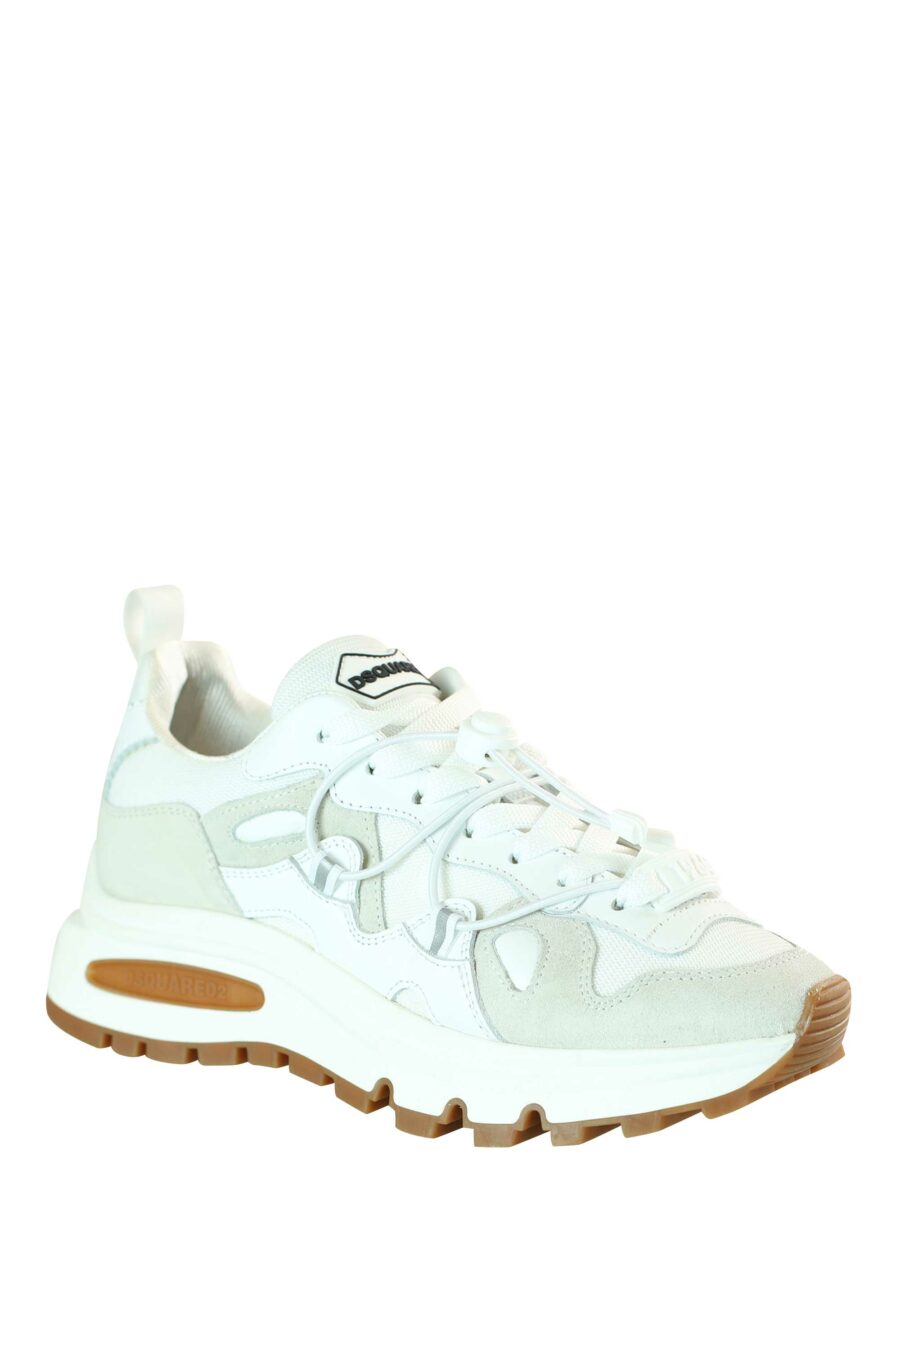 Zapatillas mix blanco con plataforma blanca y suela marrón - 8055777195864 2